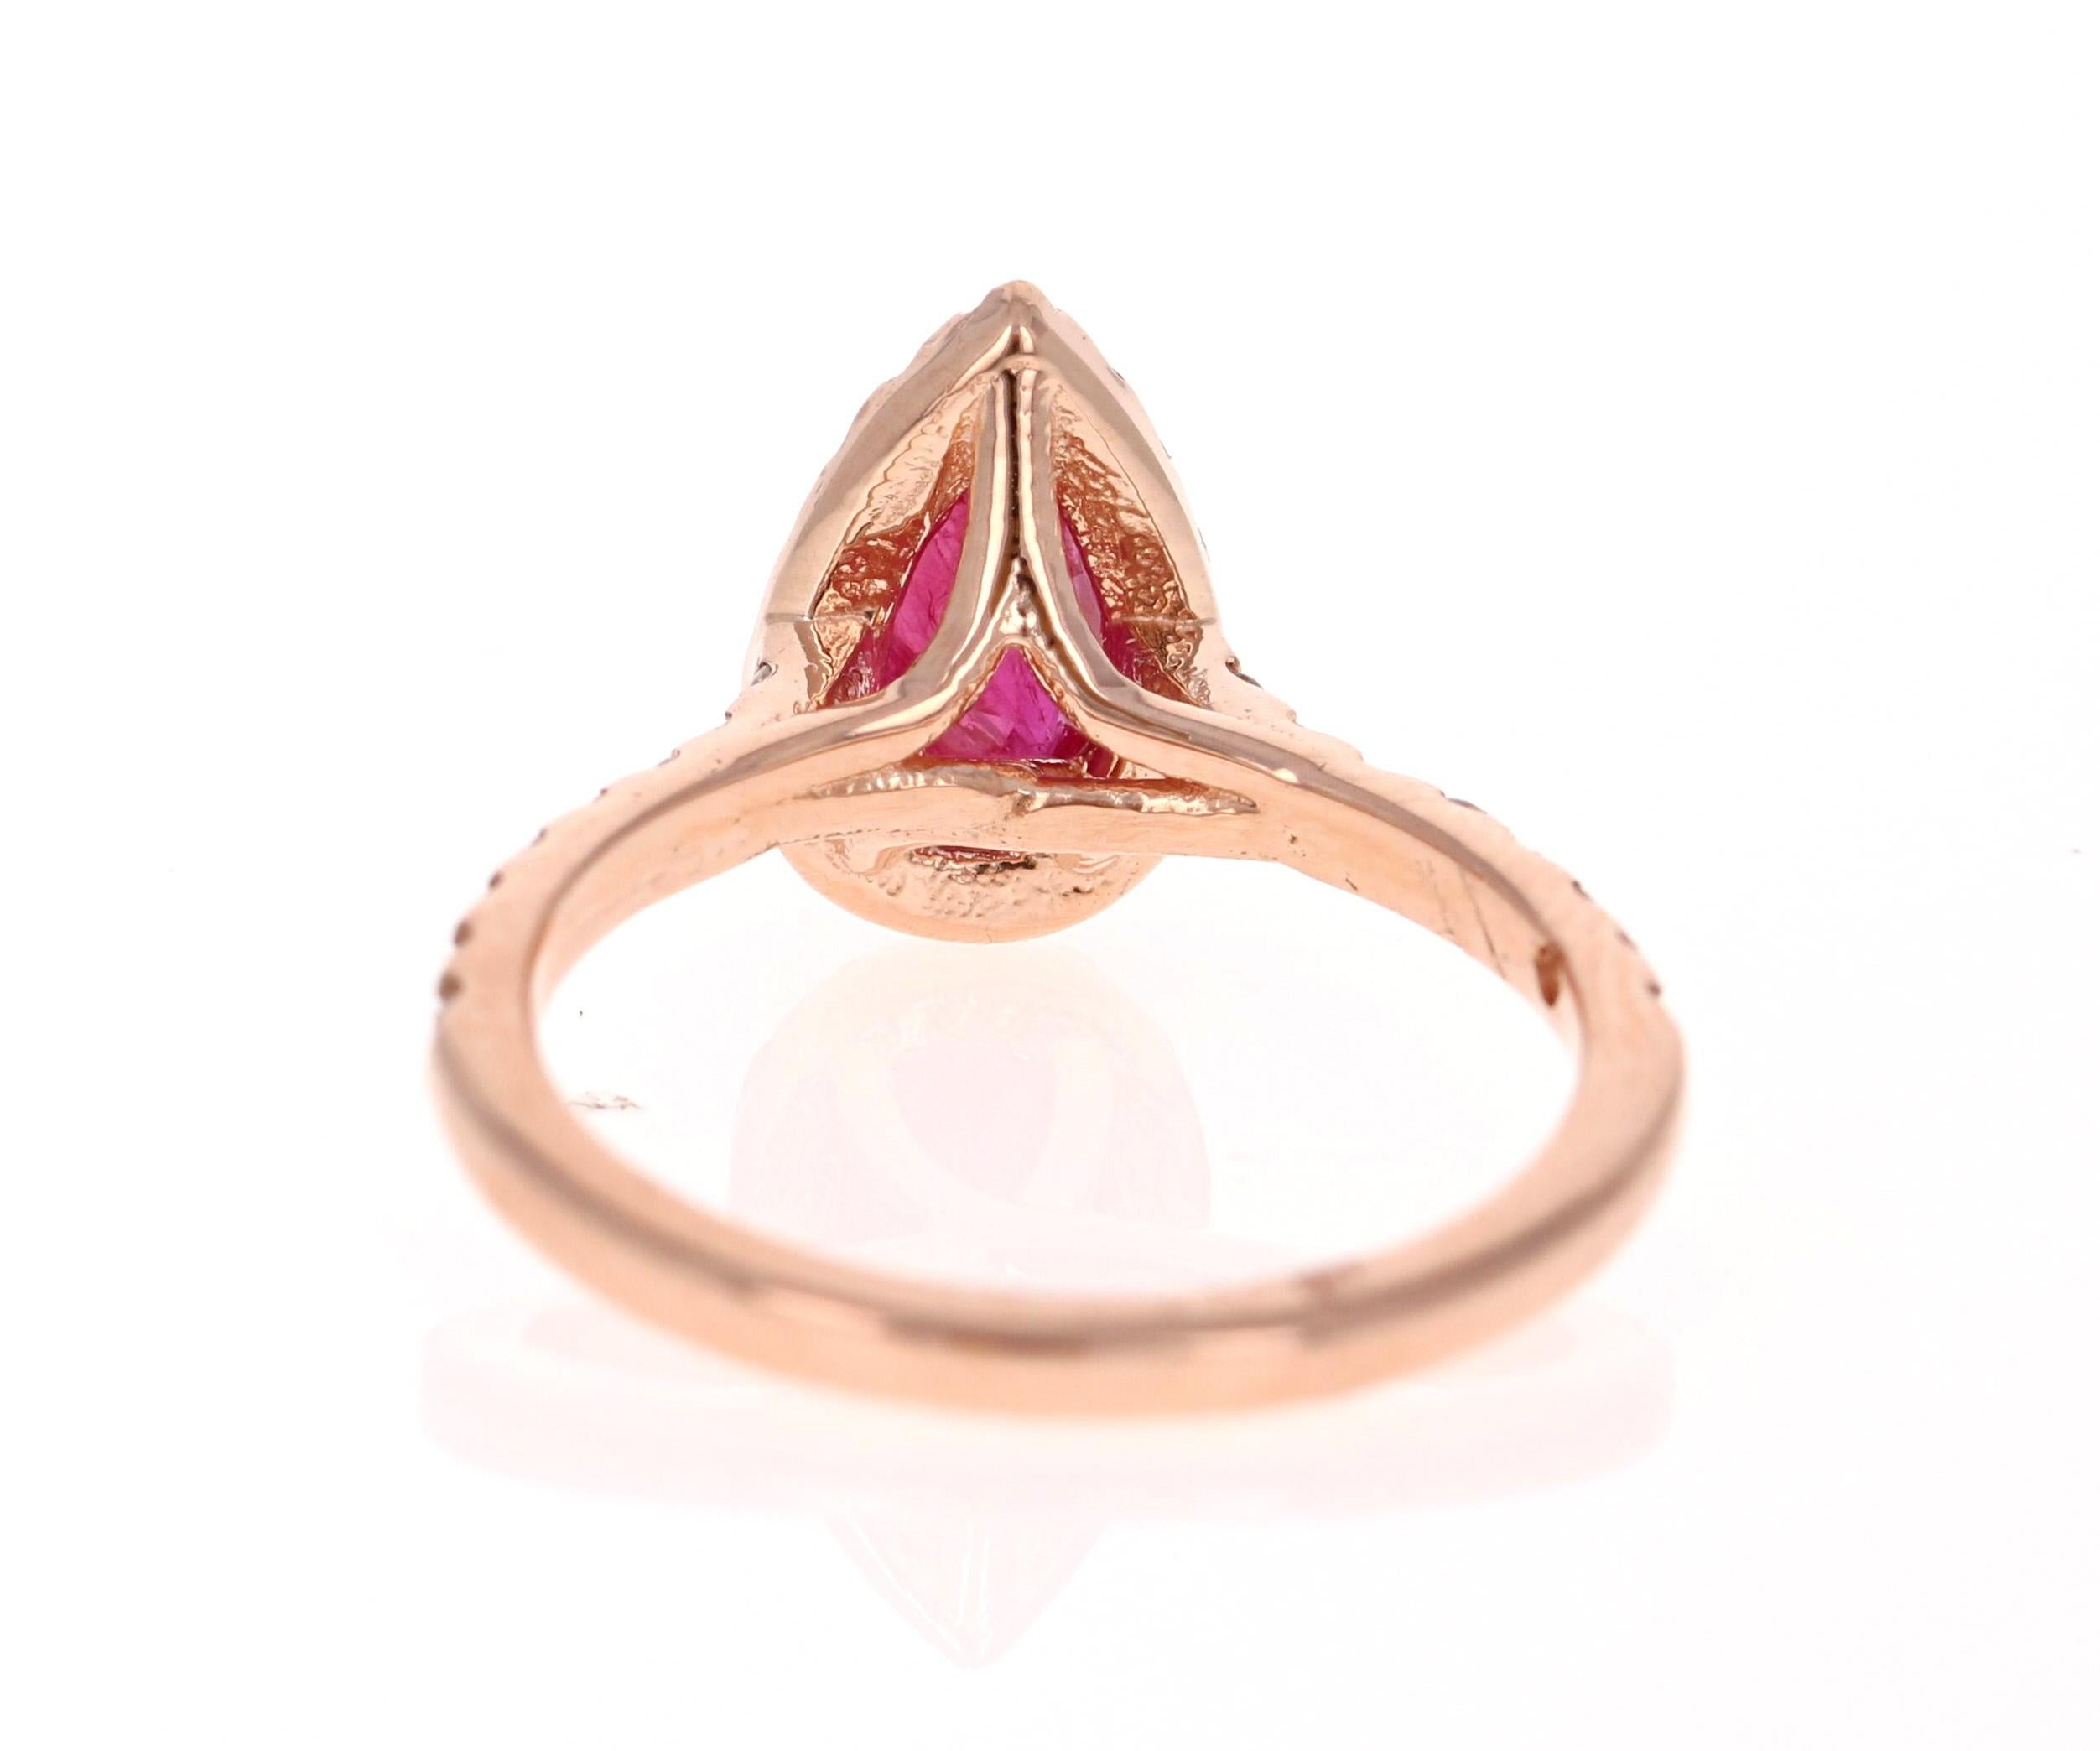 Pear Cut GIA Certified 1.64 Carat Ruby Diamond 14 Karat Rose Gold Bridal Ring